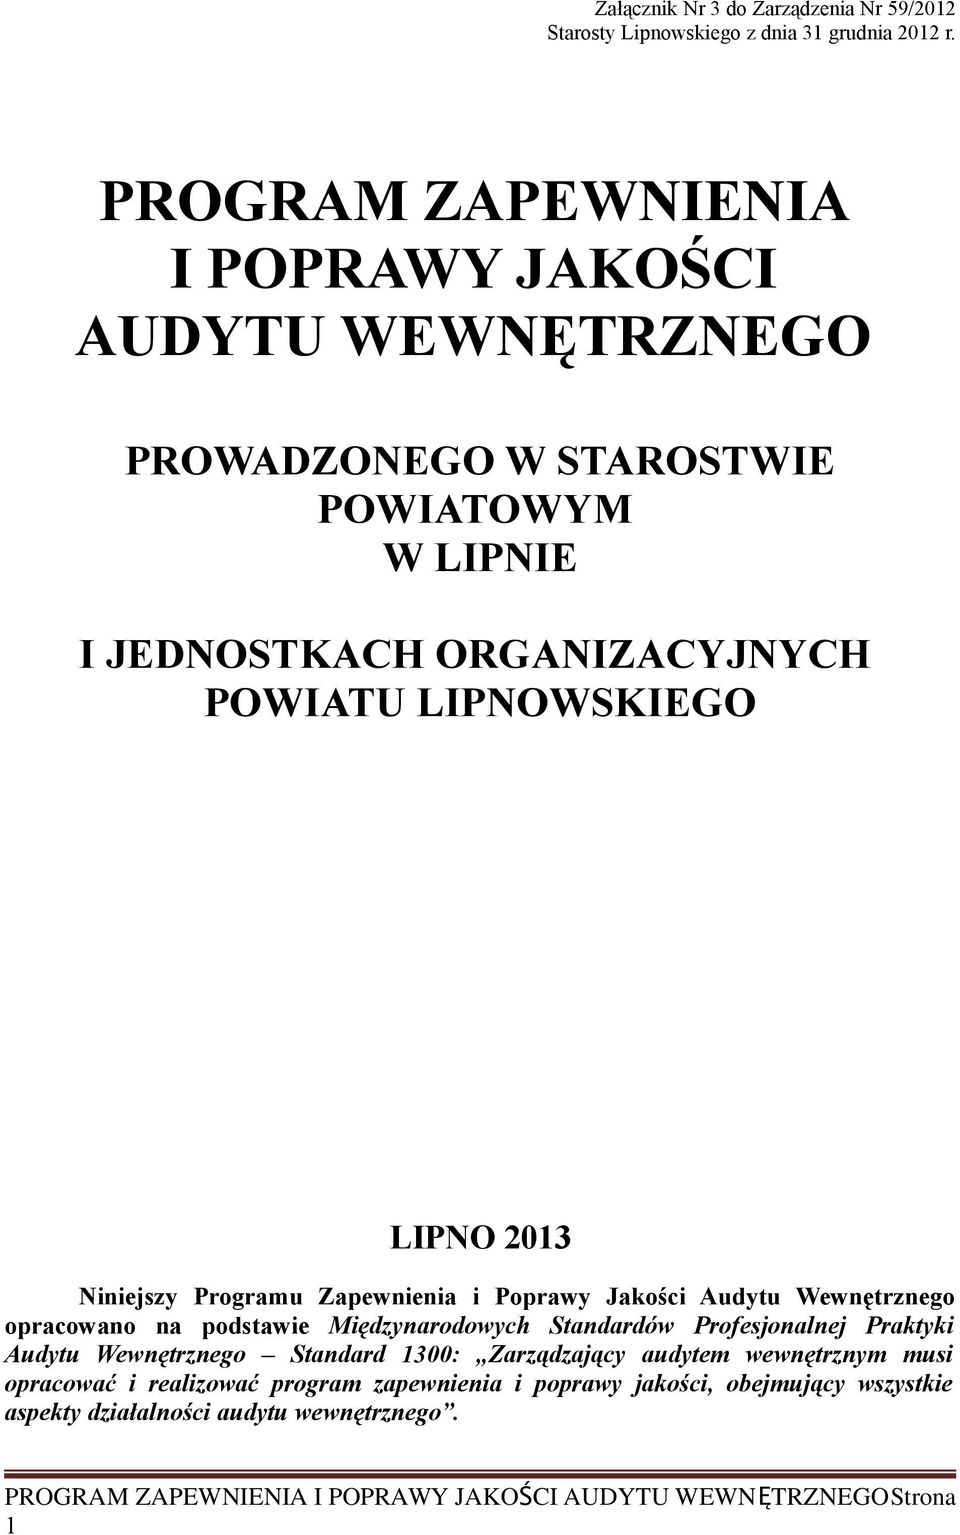 LIPNOWSKIEGO LIPNO 2013 Niniejszy Programu Zapewnienia i Poprawy Jakości Audytu Wewnętrznego opracowano na podstawie Międzynarodowych Standardów